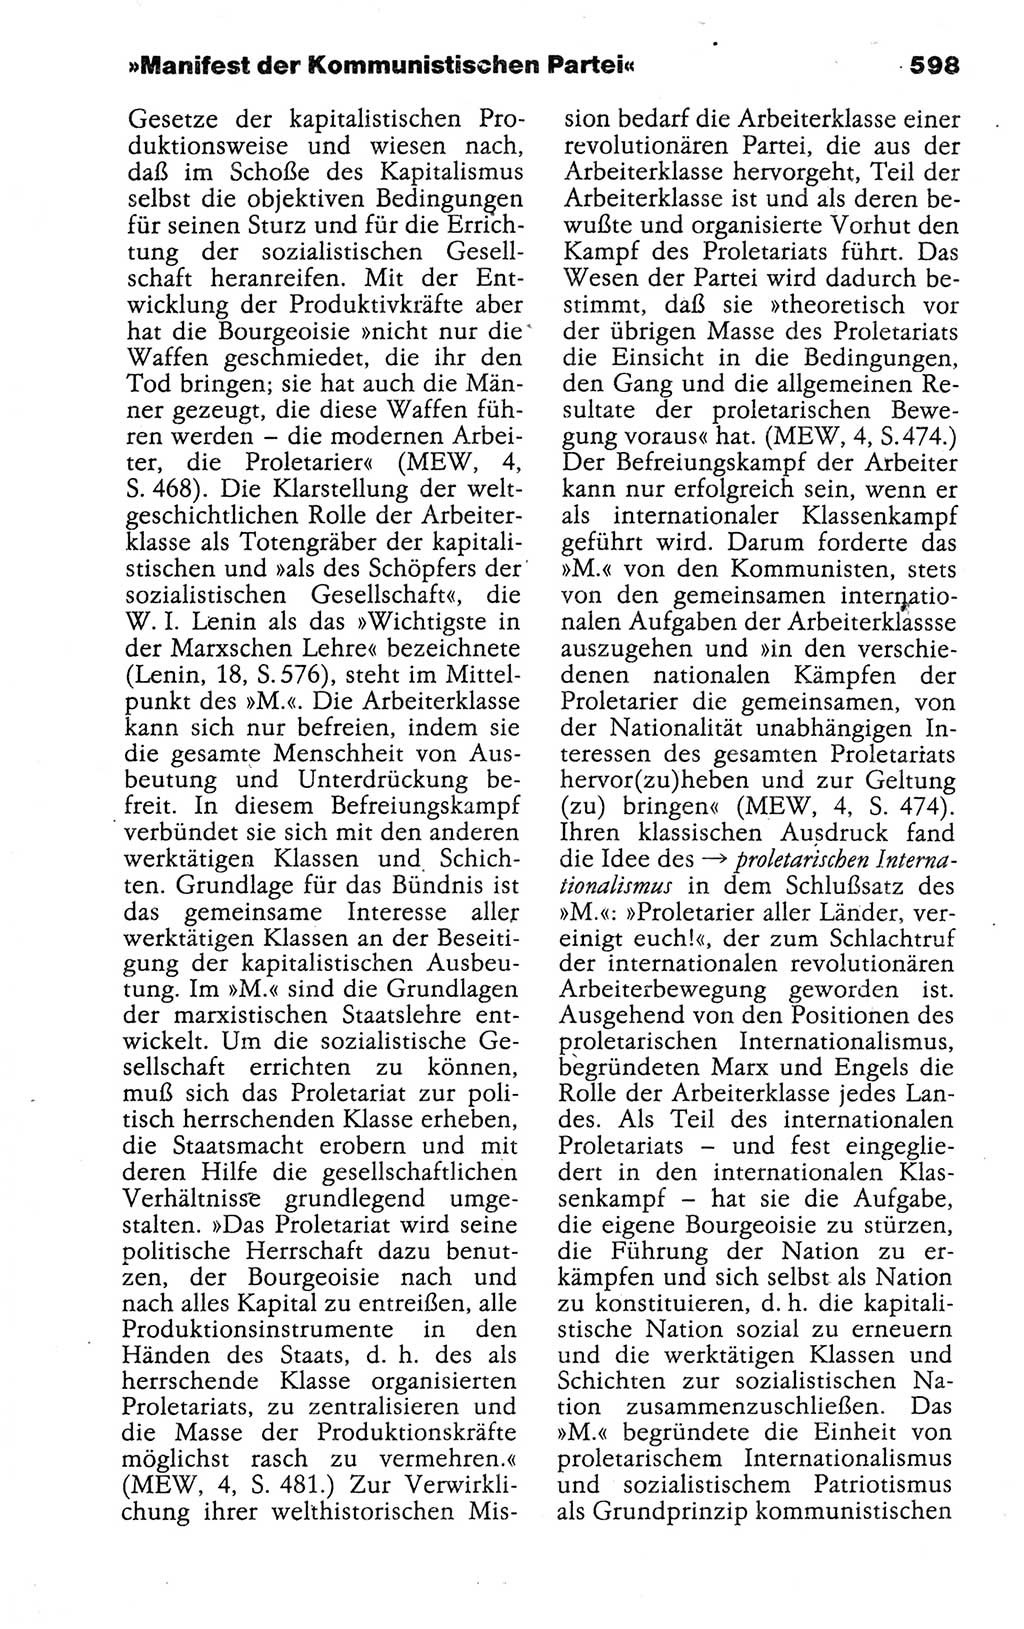 Kleines politisches Wörterbuch [Deutsche Demokratische Republik (DDR)] 1988, Seite 598 (Kl. pol. Wb. DDR 1988, S. 598)